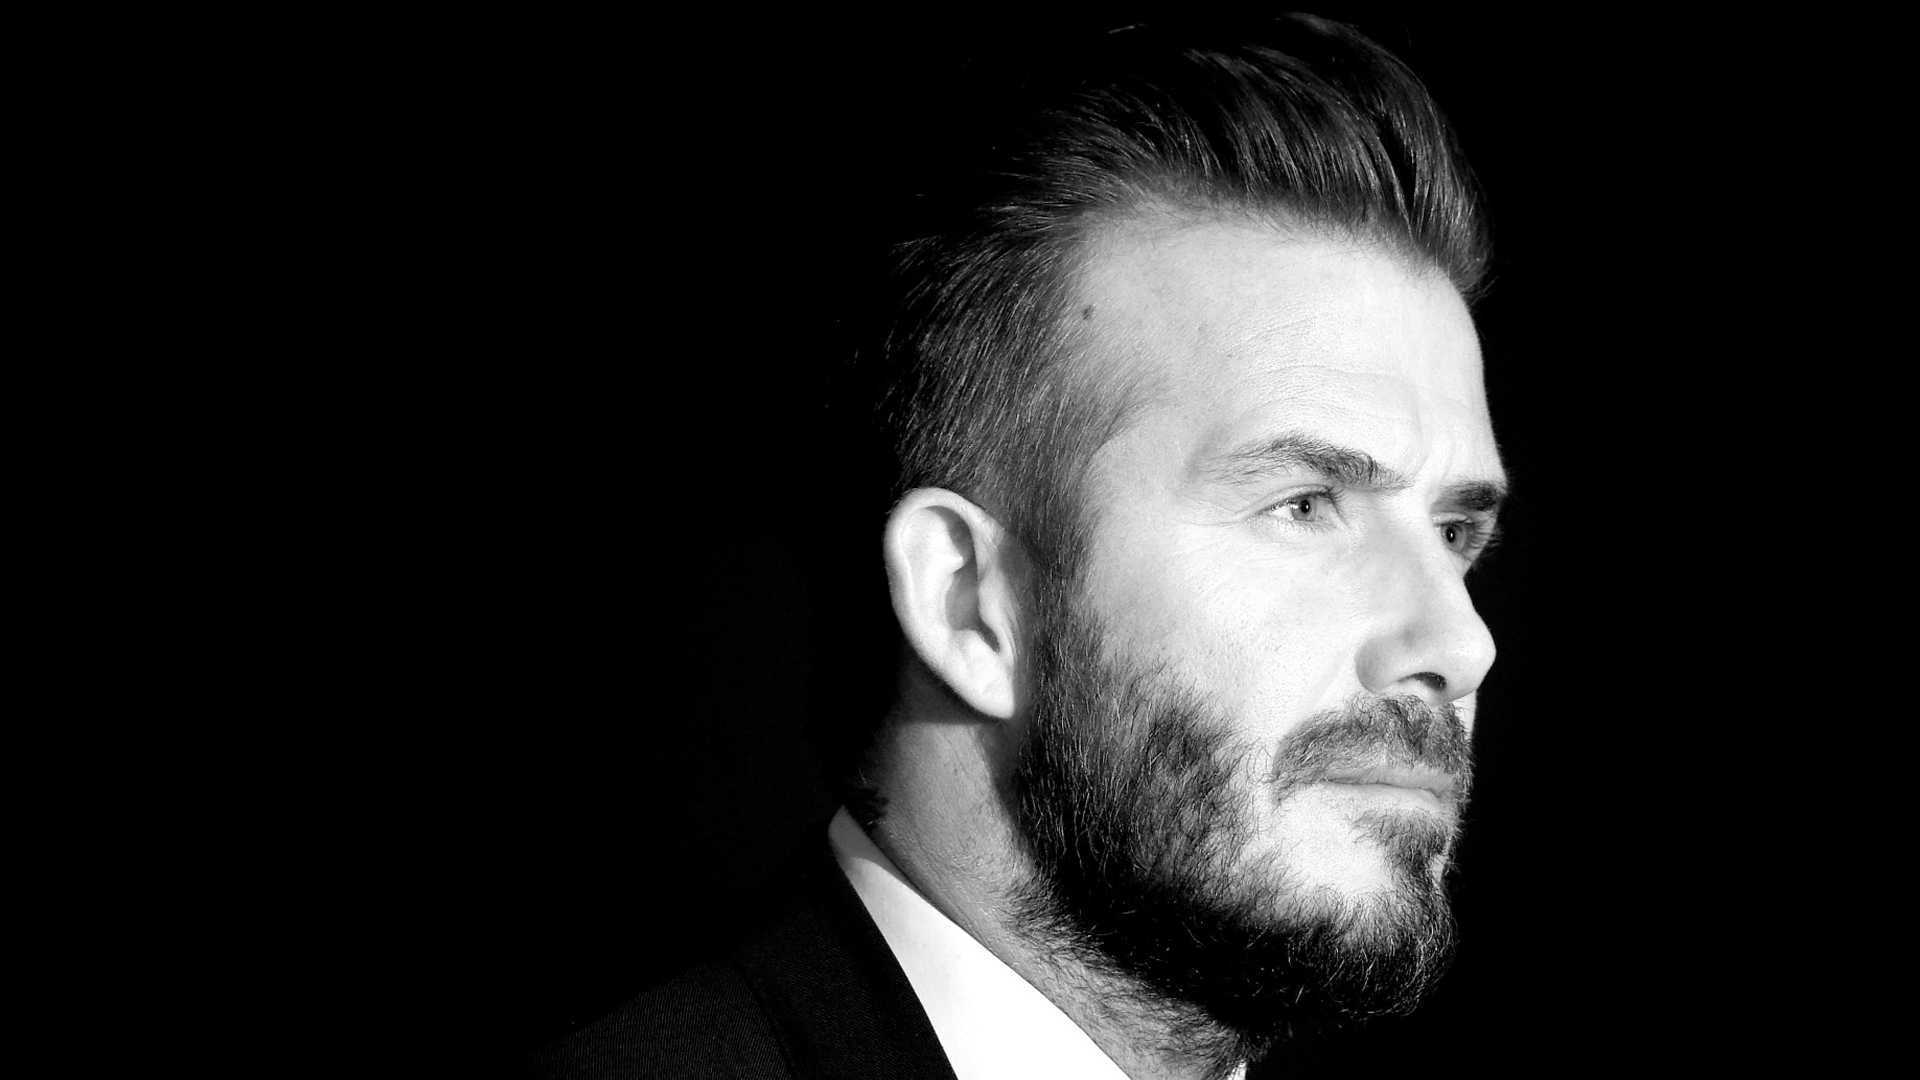 David Beckham Hd Animation Images David Beckham Hd - David Beckham Clean Beard - HD Wallpaper 